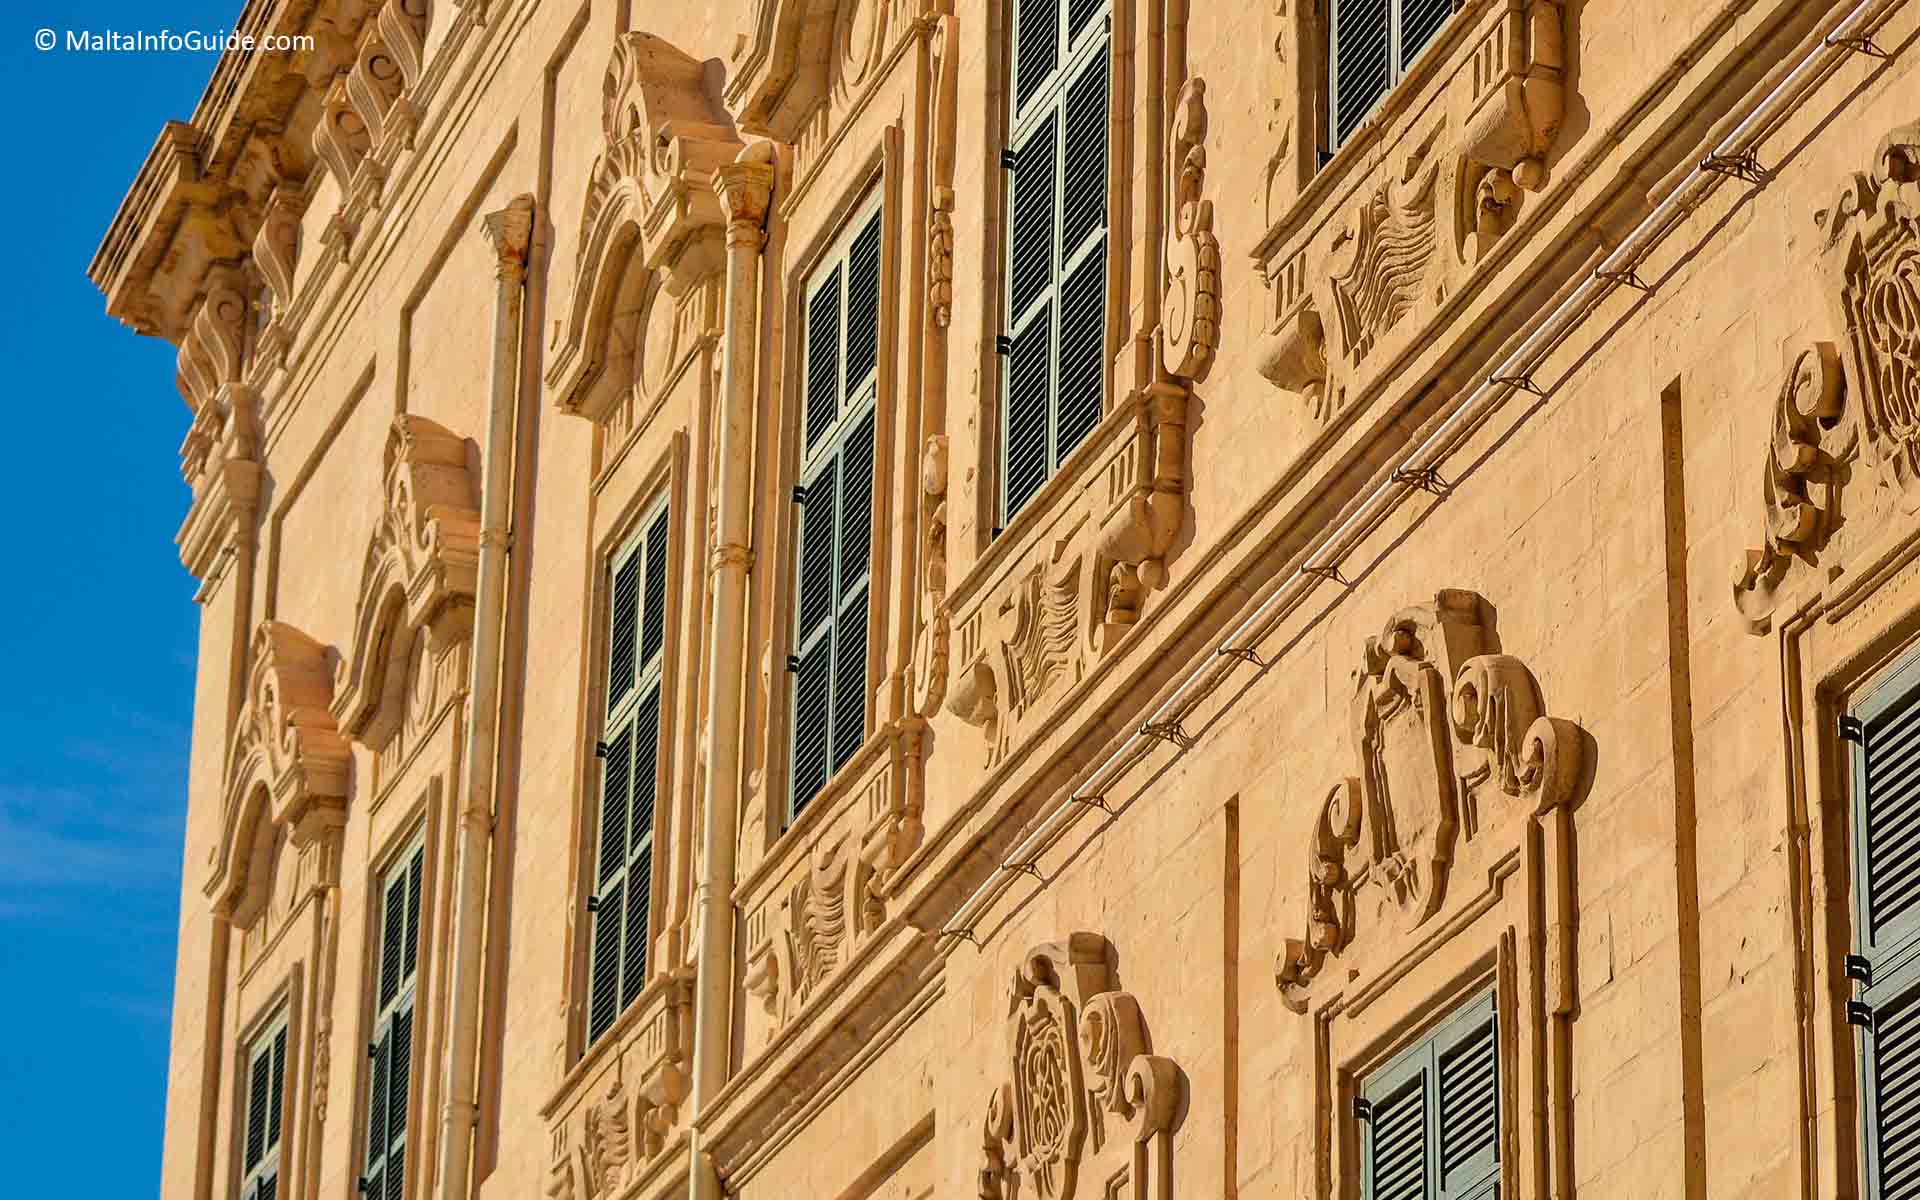 Facade architecture in Valletta Malta